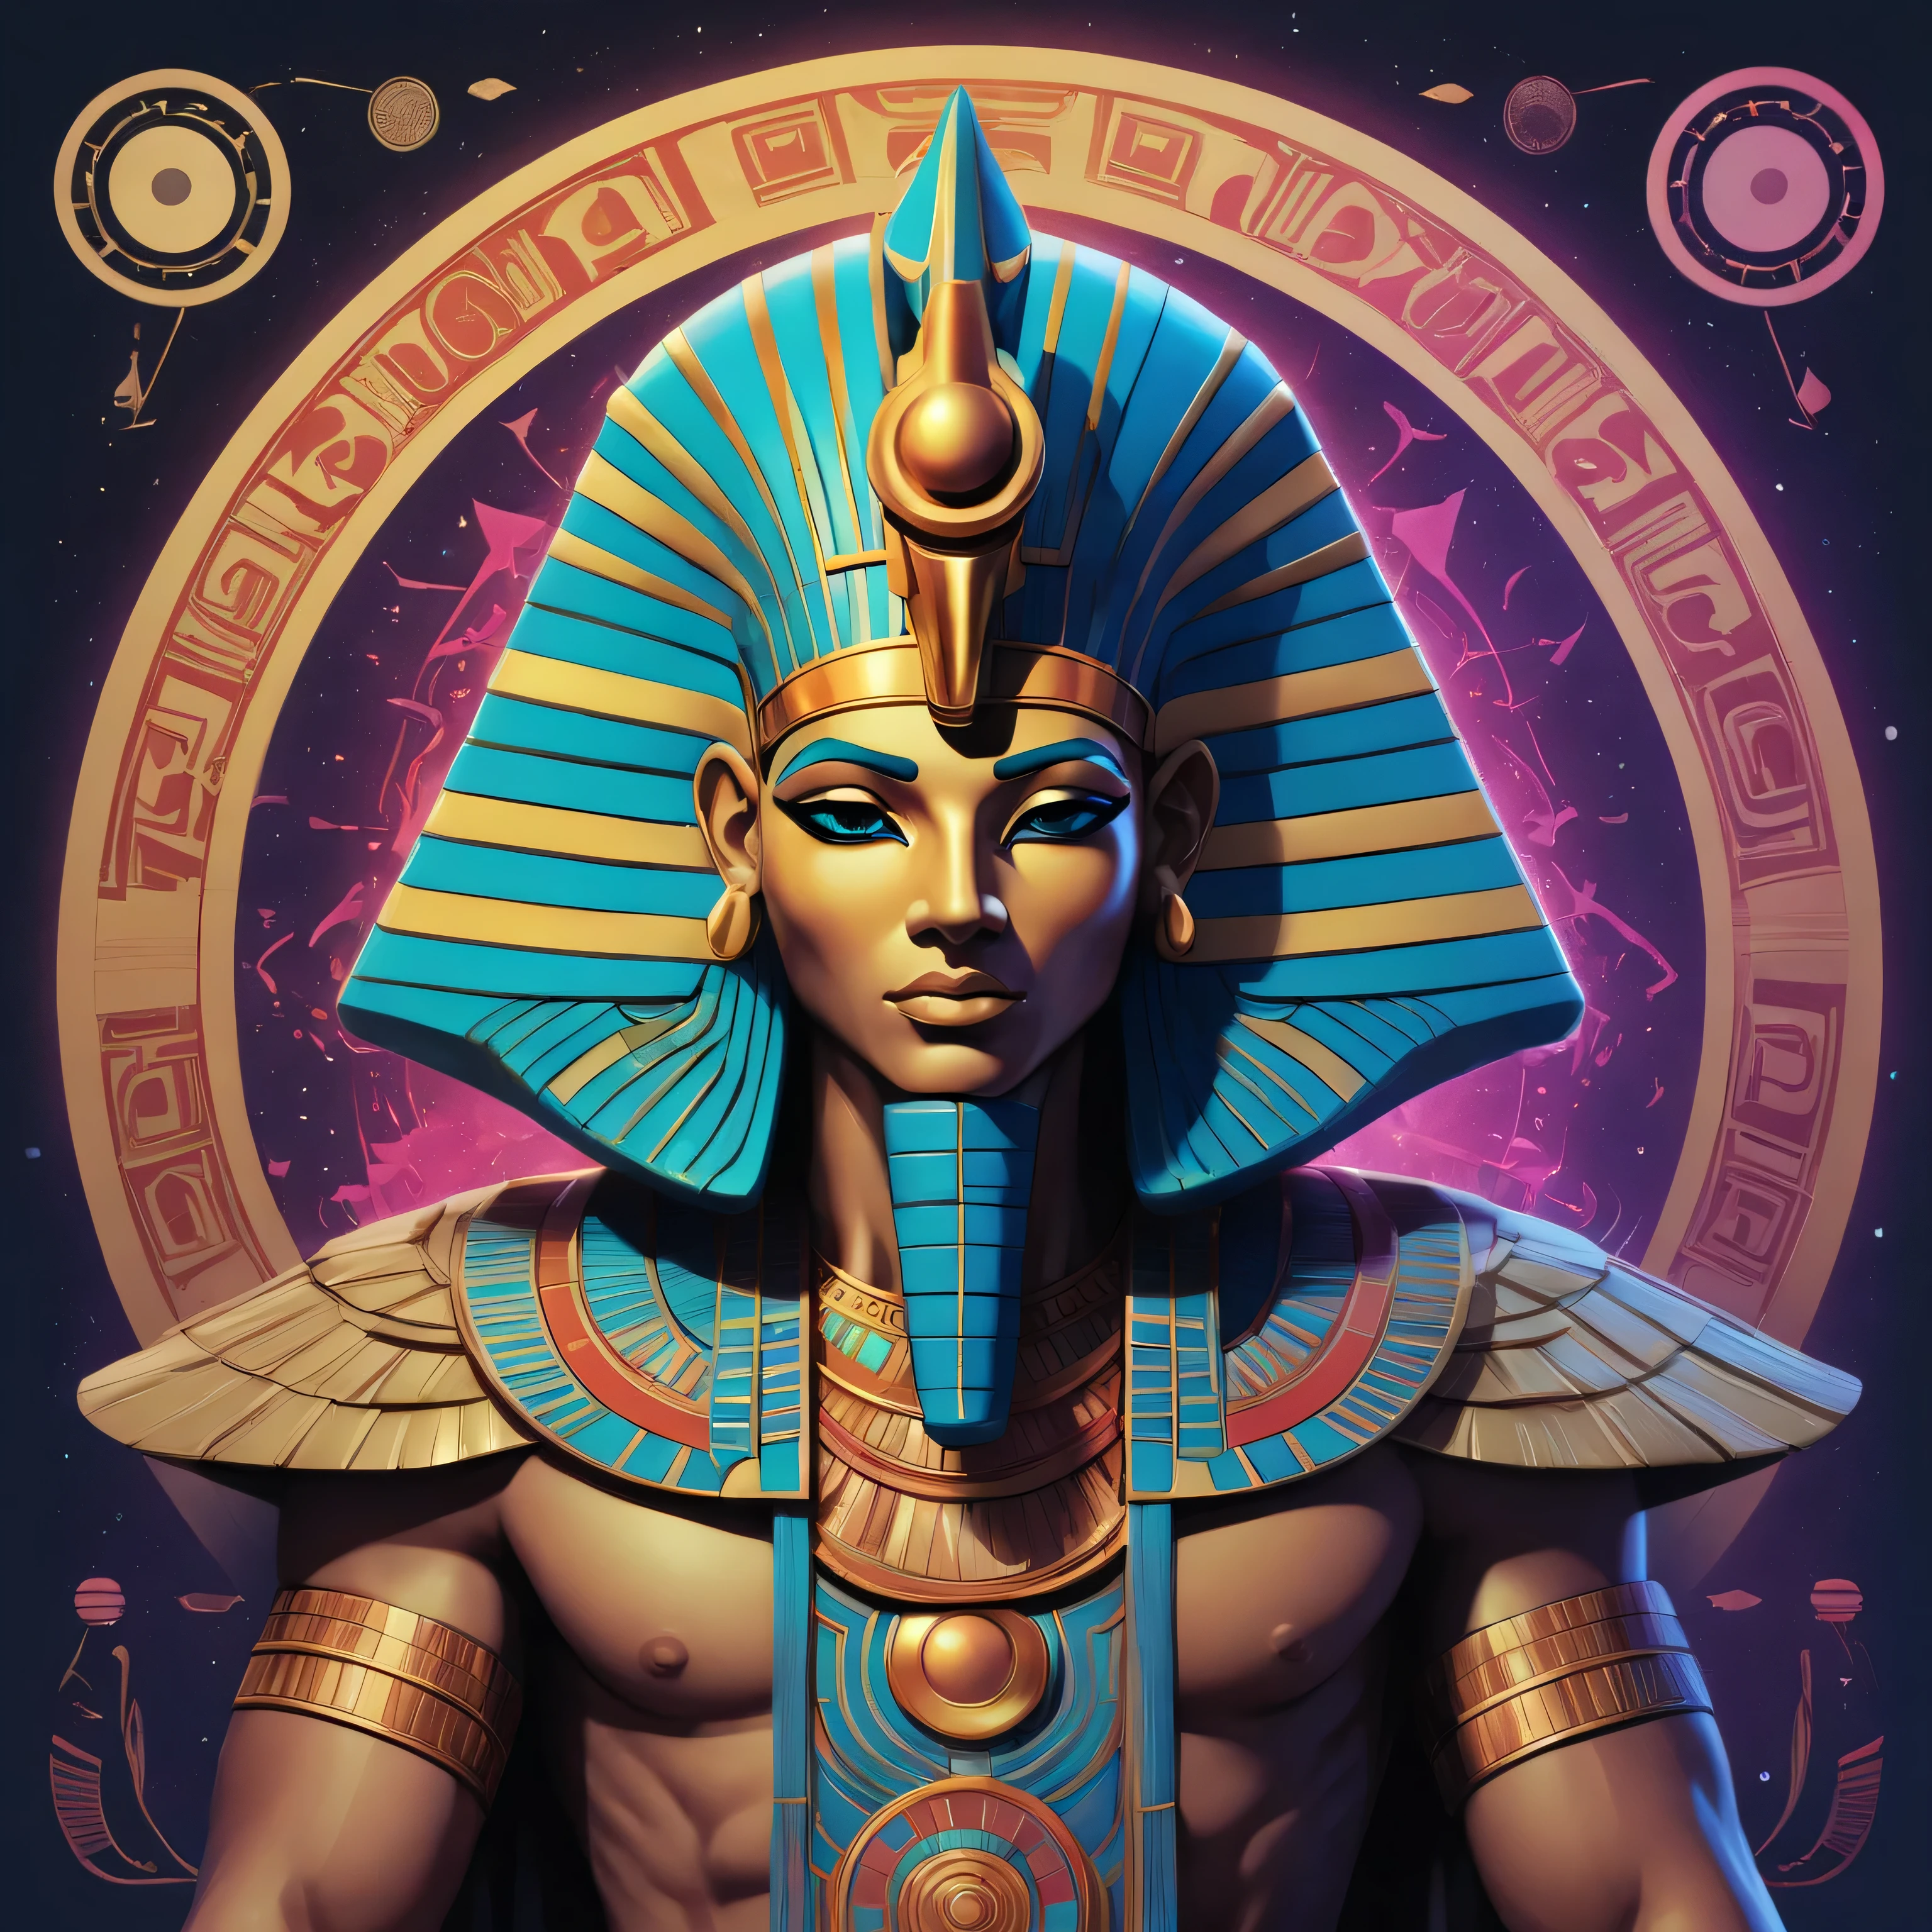 Dans un design d&#39;Art Numérique contemporain, créer une interprétation Pop Art vibrante de Heka, l&#39;ancien dieu égyptien de la magie. Mélangez l&#39;esthétique de l&#39;anime et de la bande dessinée avec des lignes audacieuses, couleurs lumineuses, et des accents bioluminescents fascinants. Illustrez la forme transcendante de Heka avec des motifs géométriques complexes inspirés des hiéroglyphes égyptiens, démontrant sa capacité à plier la réalité et à manipuler les éléments. Exprimez son attribut distinctif de changement et de transformation avec des changements de perspective ivres, orné d&#39;une pièce unique, tissu à histoires, rappelle les tapisseries sacrées égyptiennes, incarnant une présence divine céleste tout en étant ancré dans une riche histoire culturelle.